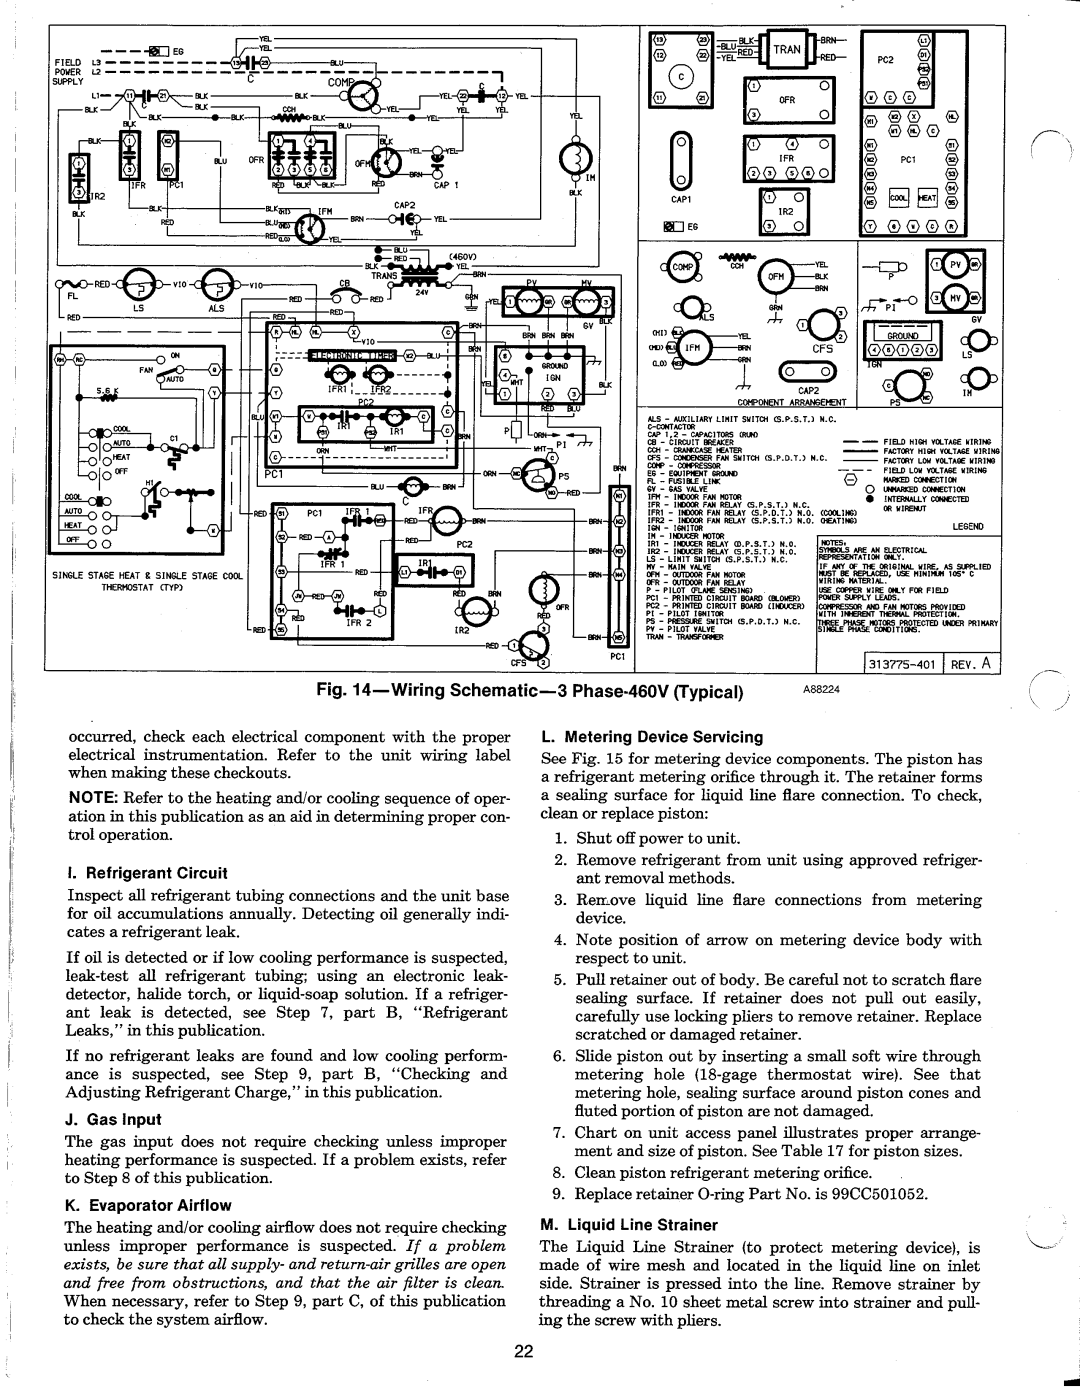 Carrier 48N manual 